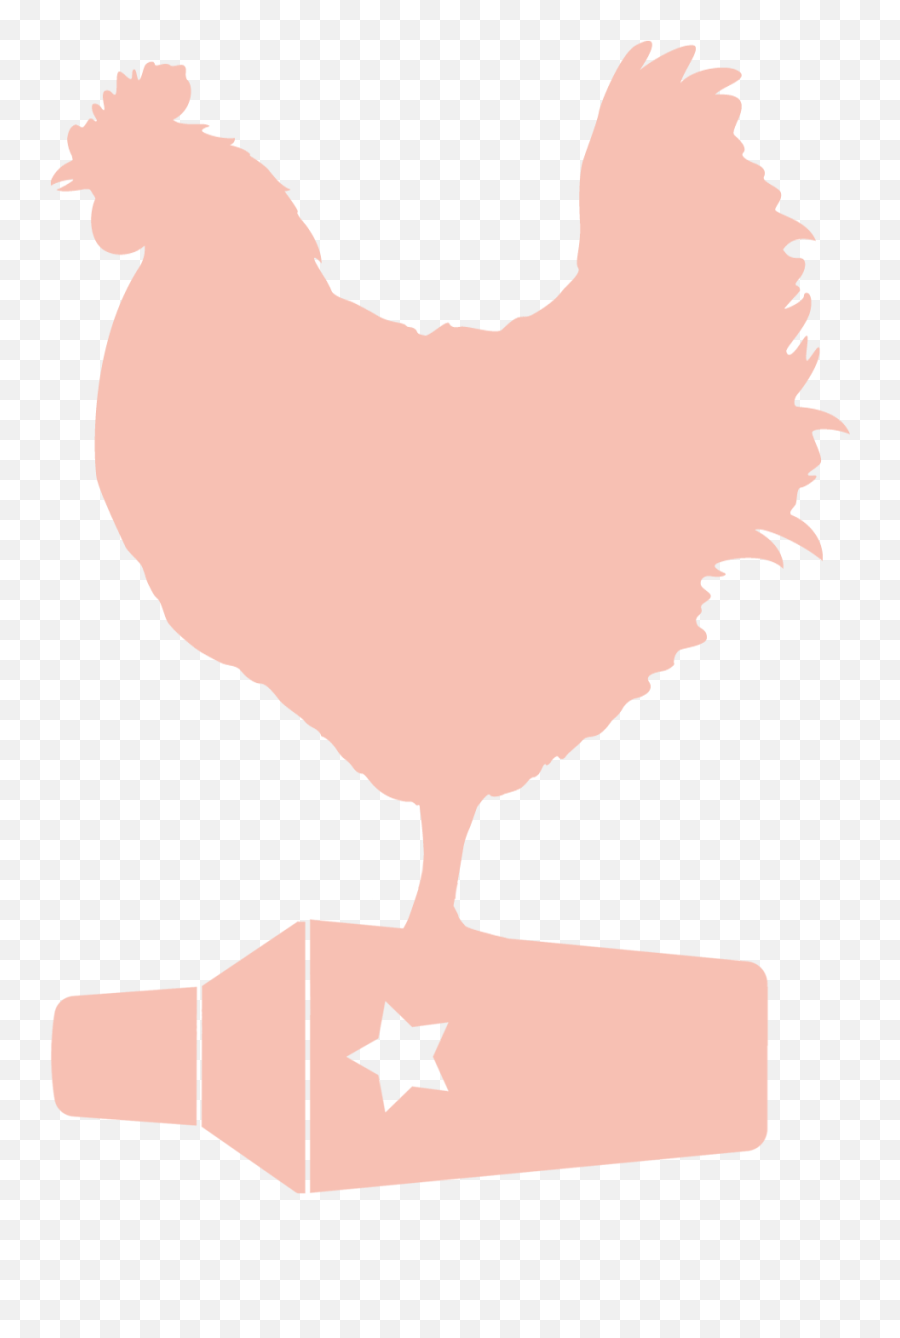 Chickens Clipart Orange Chicken - Comb Emoji,Rooster Logo